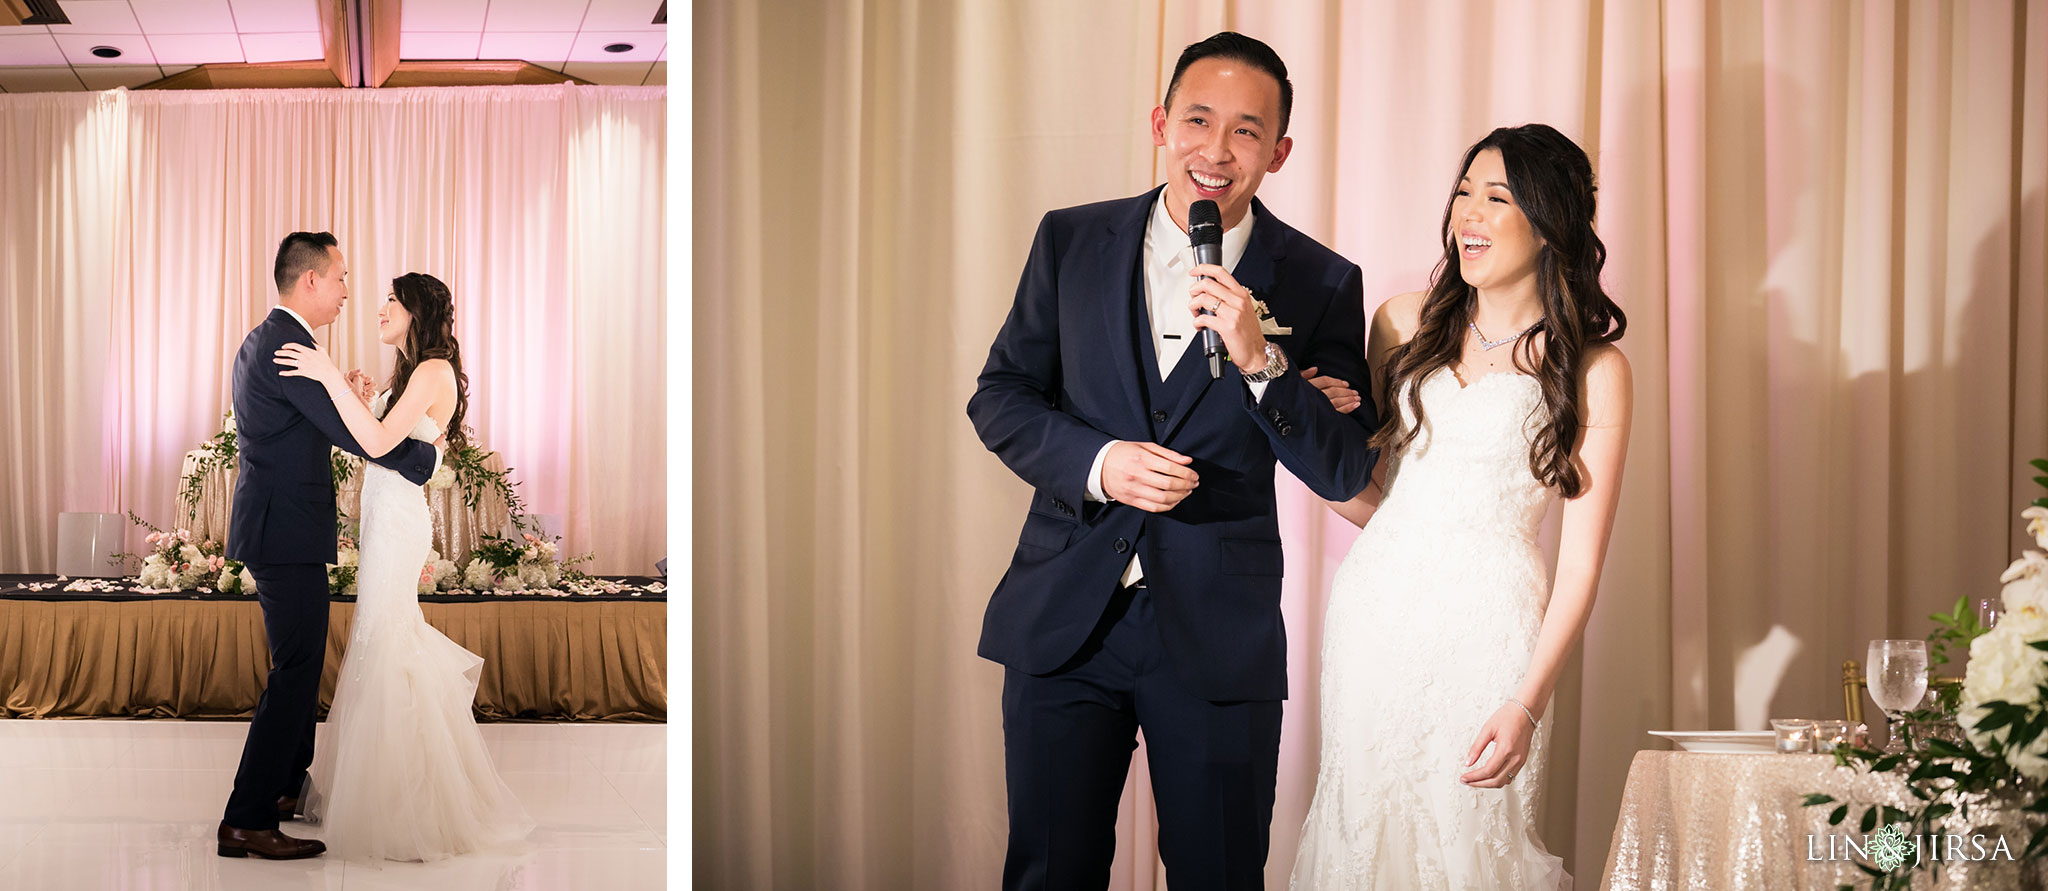 35 hilton costa mesa wedding reception photography